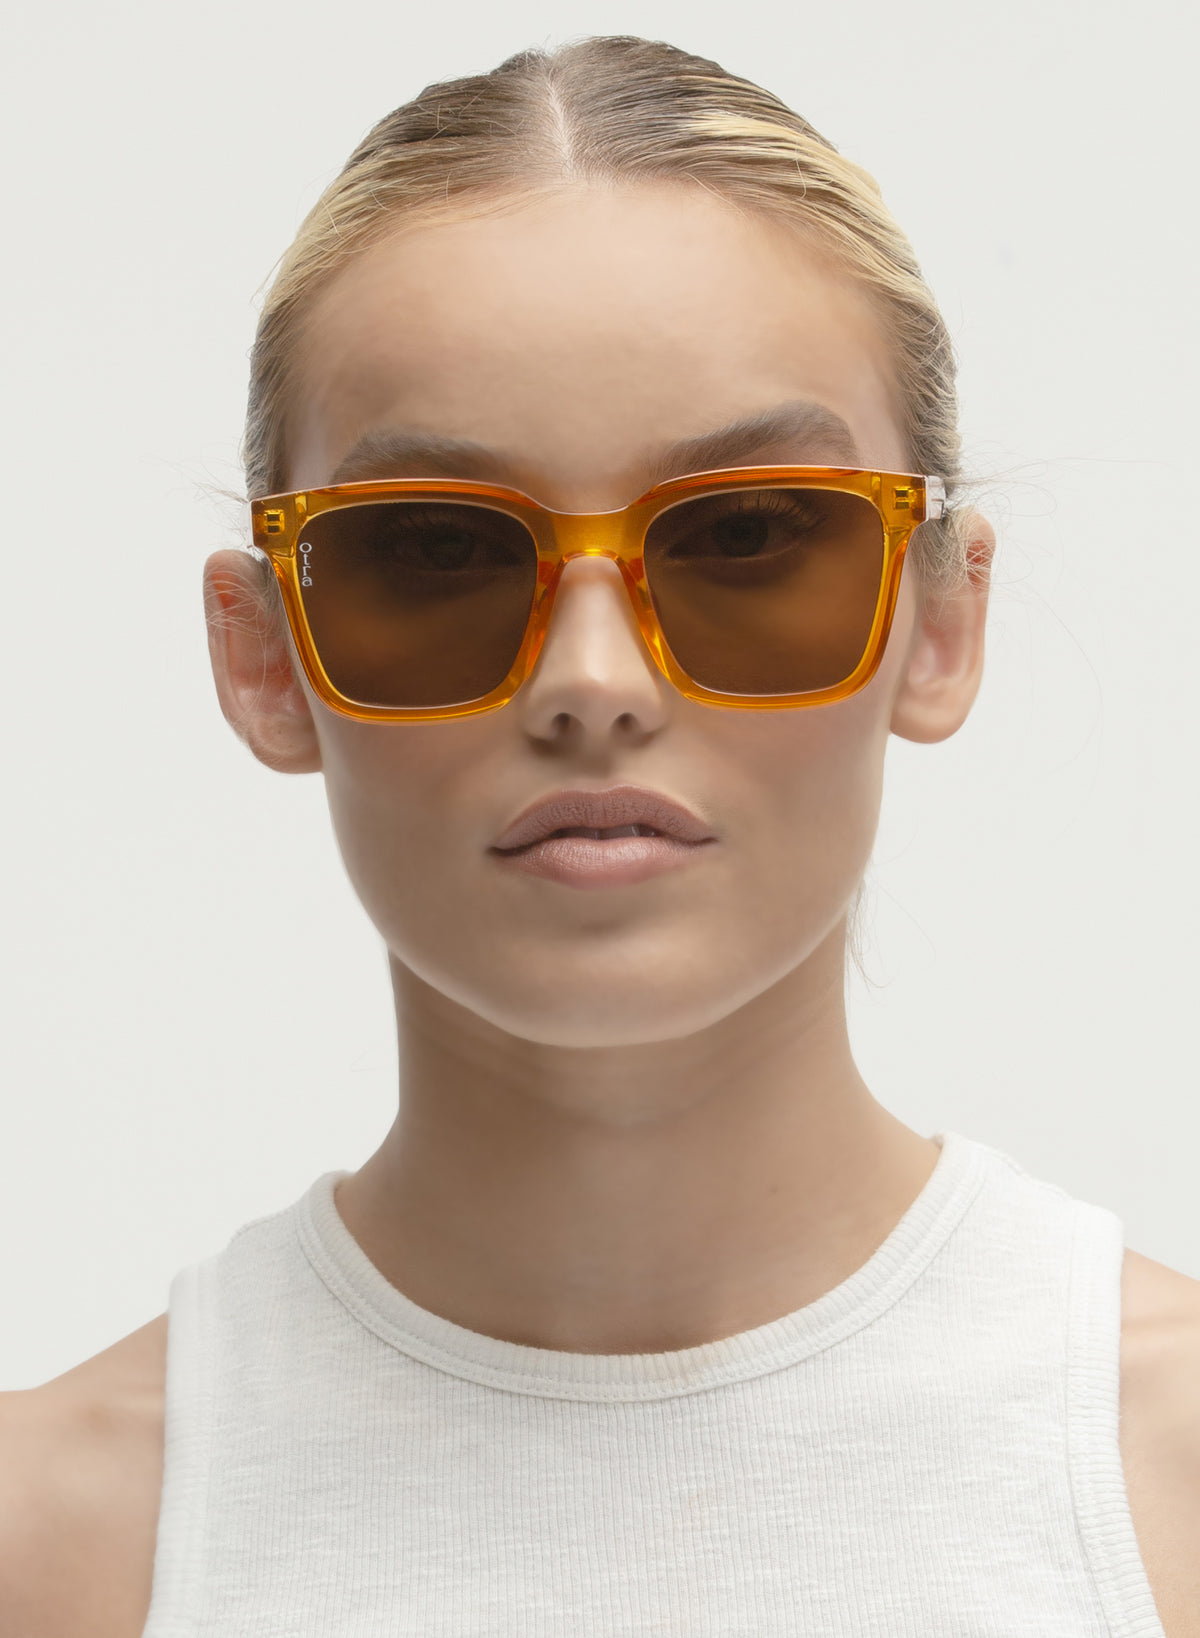 otra eyewear - fyn - translucent orane/brown